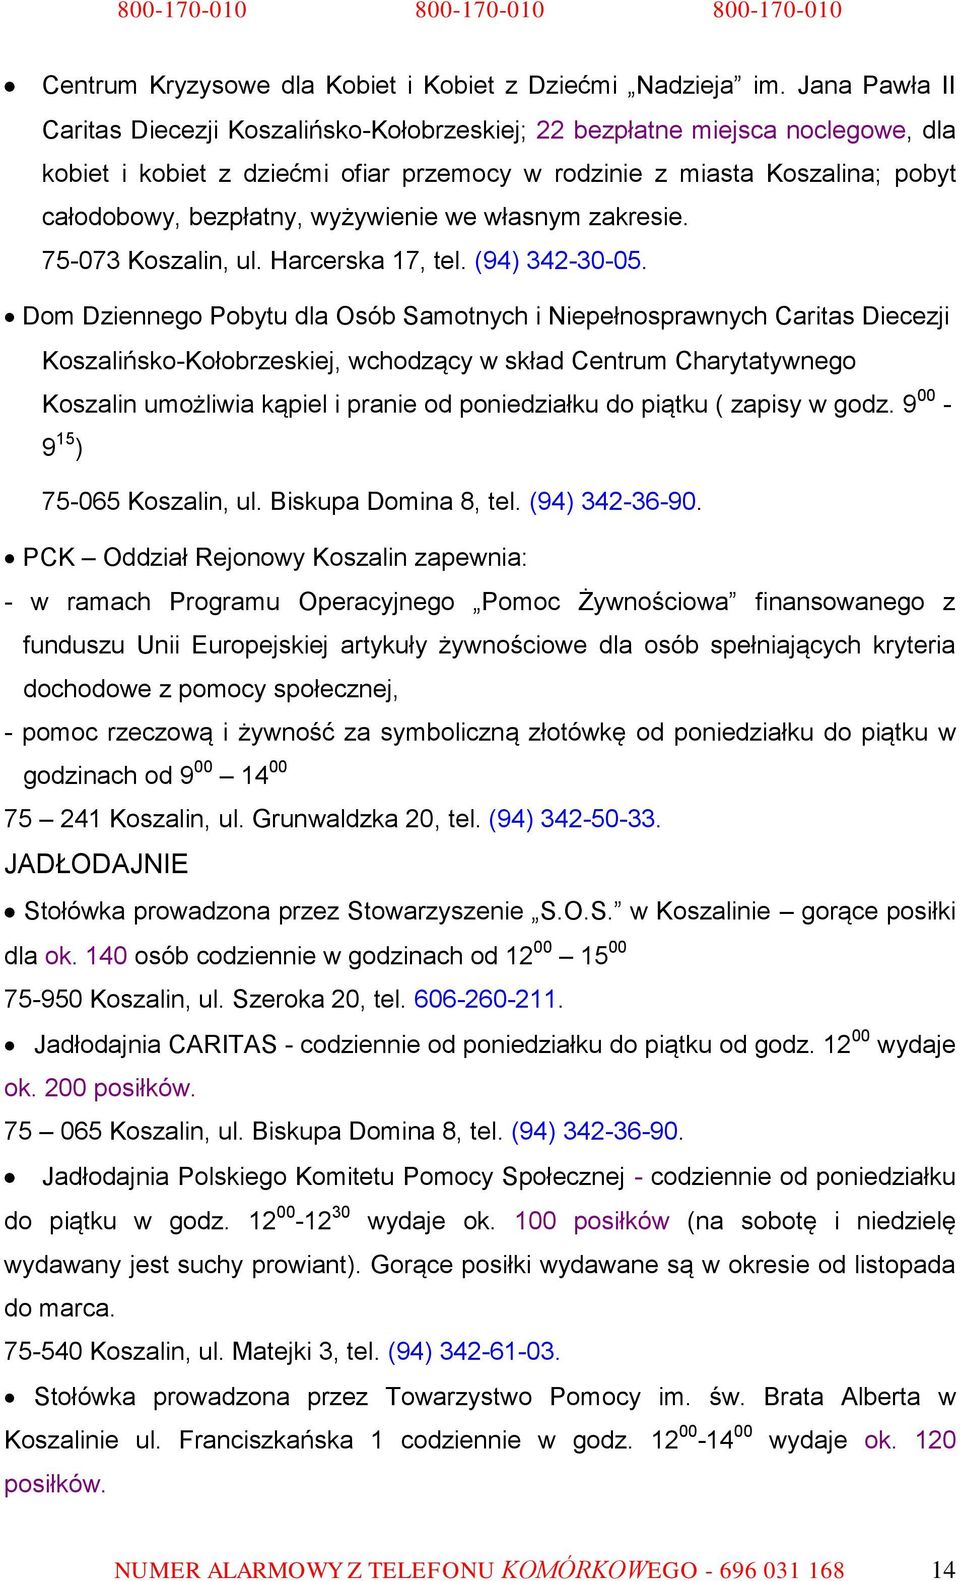 wyżywienie we własnym zakresie. 75-073 Koszalin, ul. Harcerska 17, tel. (94) 342-30-05.